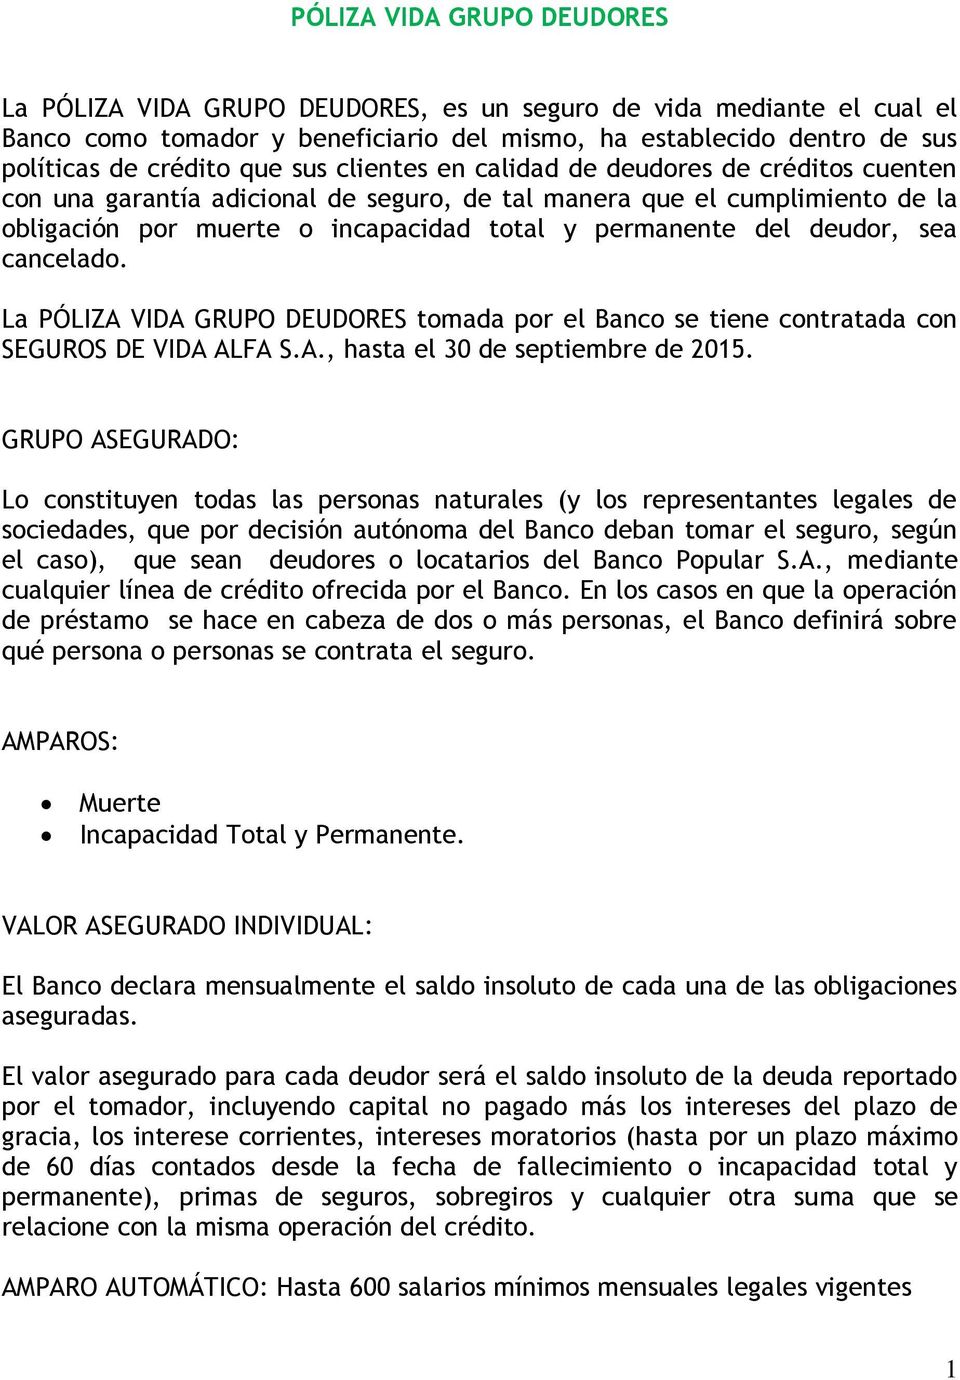 deudor, sea cancelado. La PÓLIZA VIDA GRUPO DEUDORES tomada por el Banco se tiene contratada con SEGUROS DE VIDA ALFA S.A., hasta el 30 de septiembre de 2015.